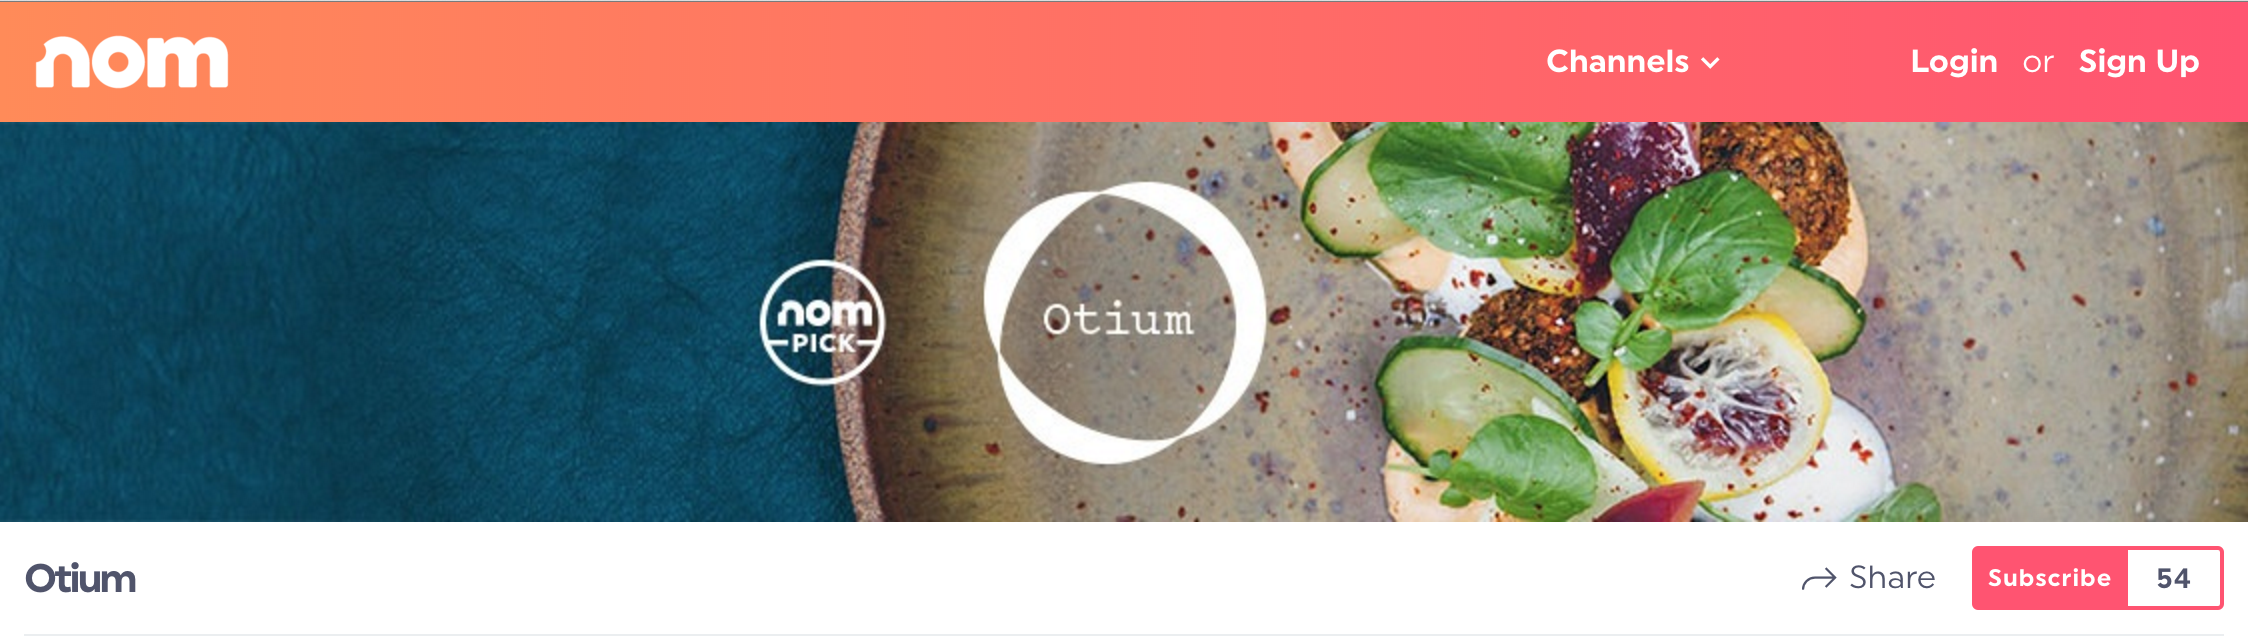 Nom, una piattaforma di cucina in live-streaming